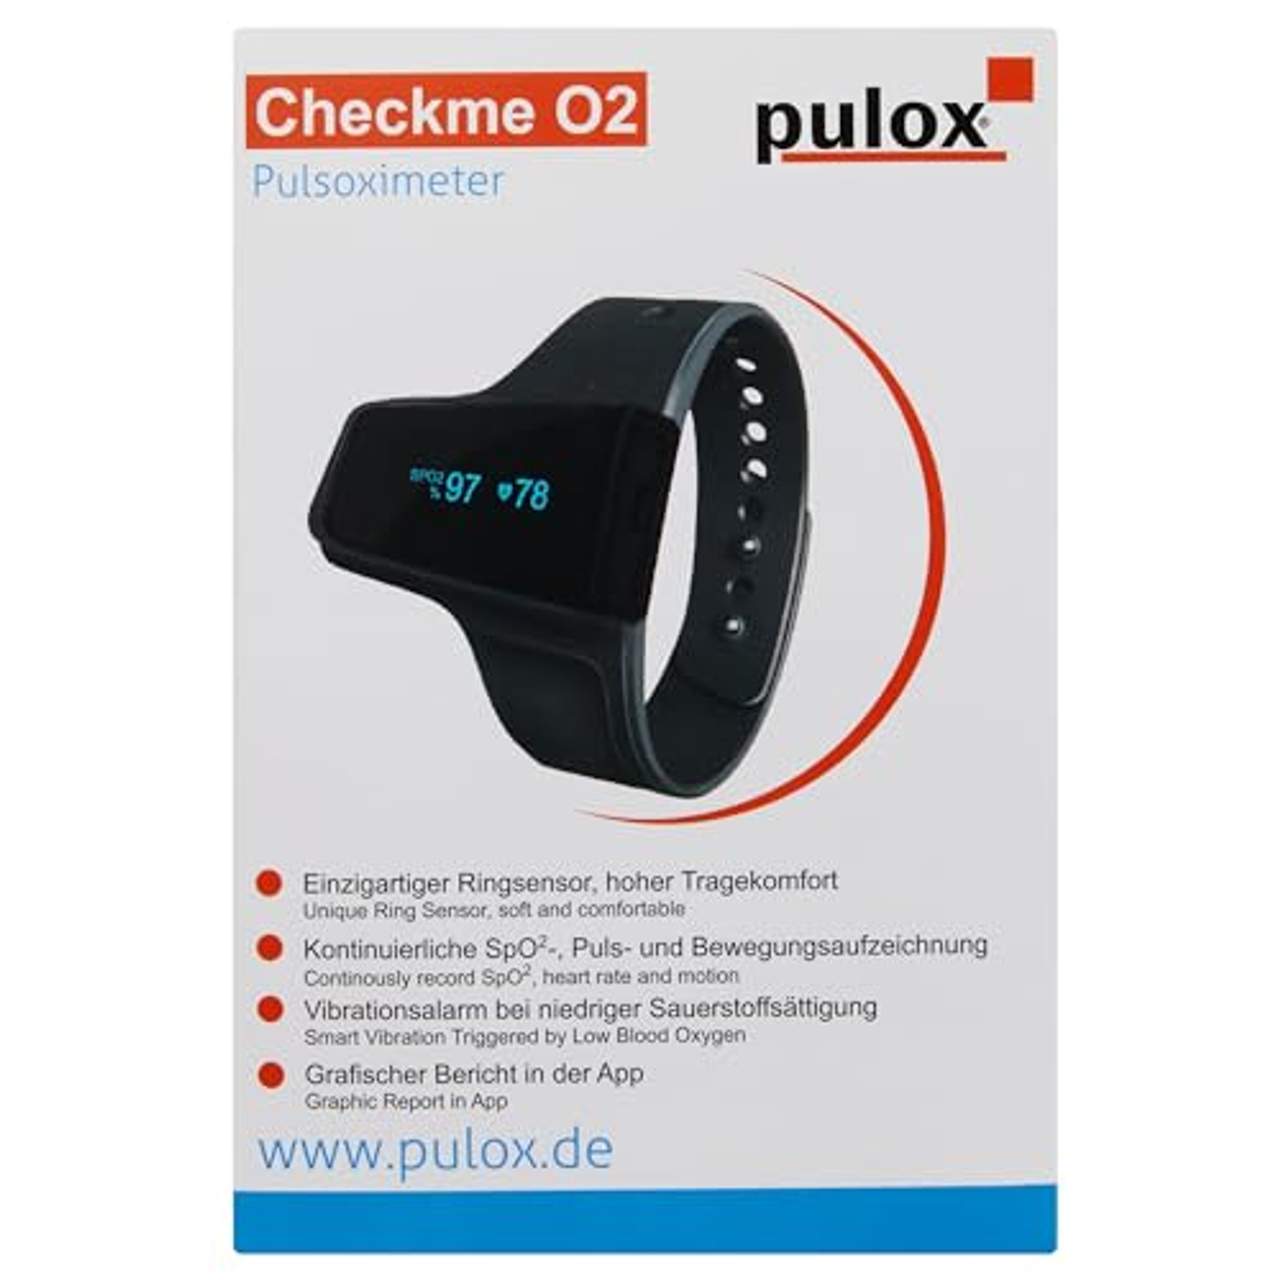 Pulox by Viatom Checkme O2 smartes Handgelenk Pulsoximeter